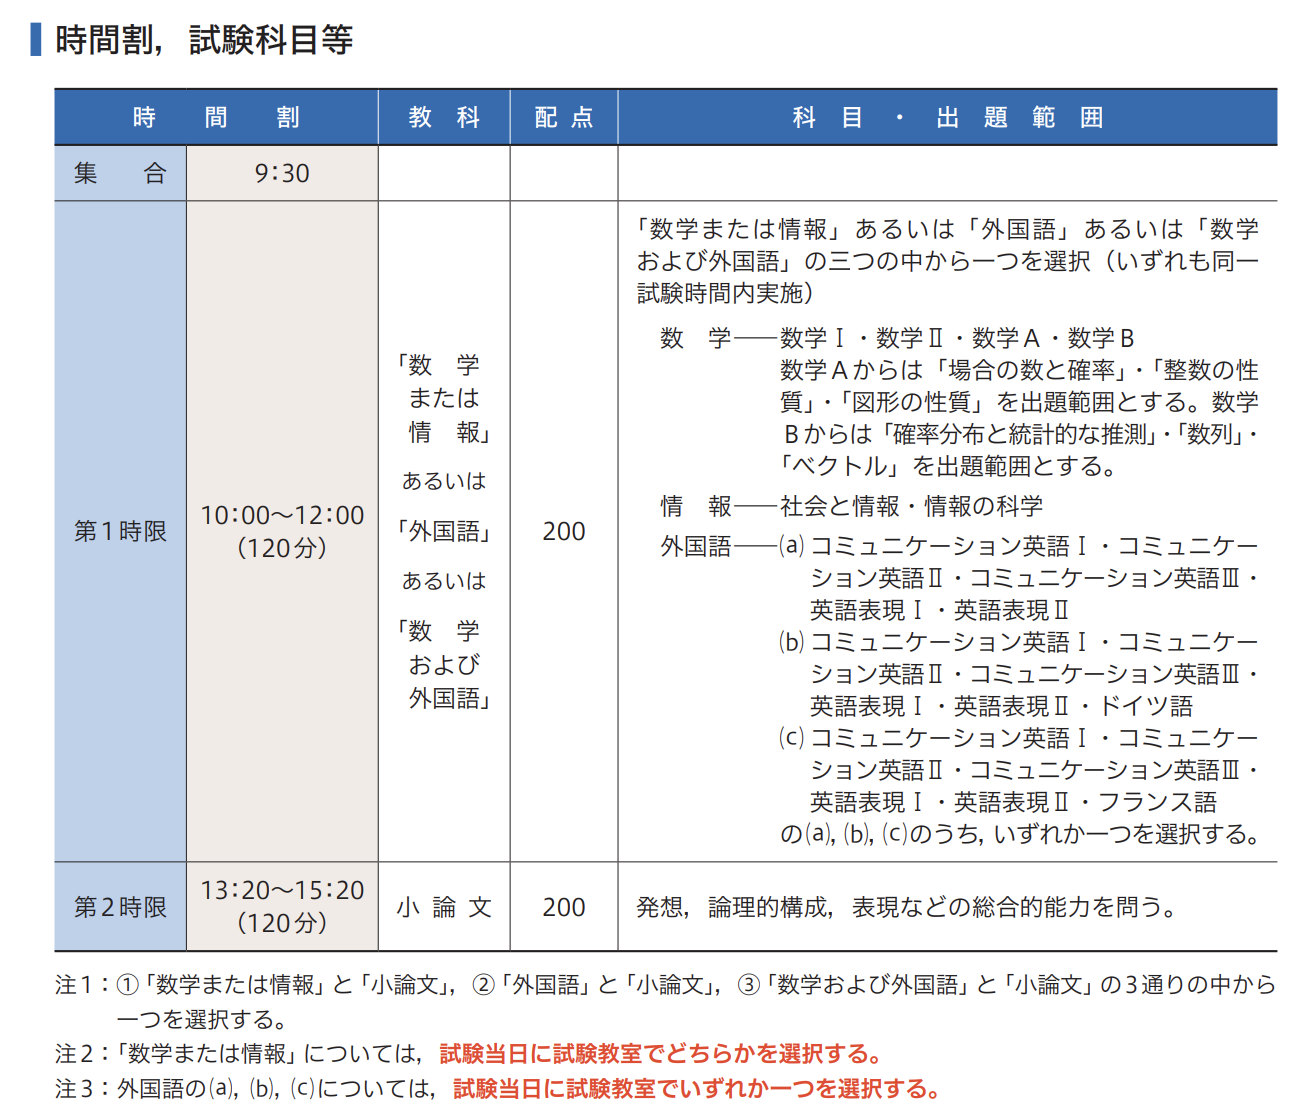 慶應SFC合格のための小論文対策方法を徹底解説します！ -